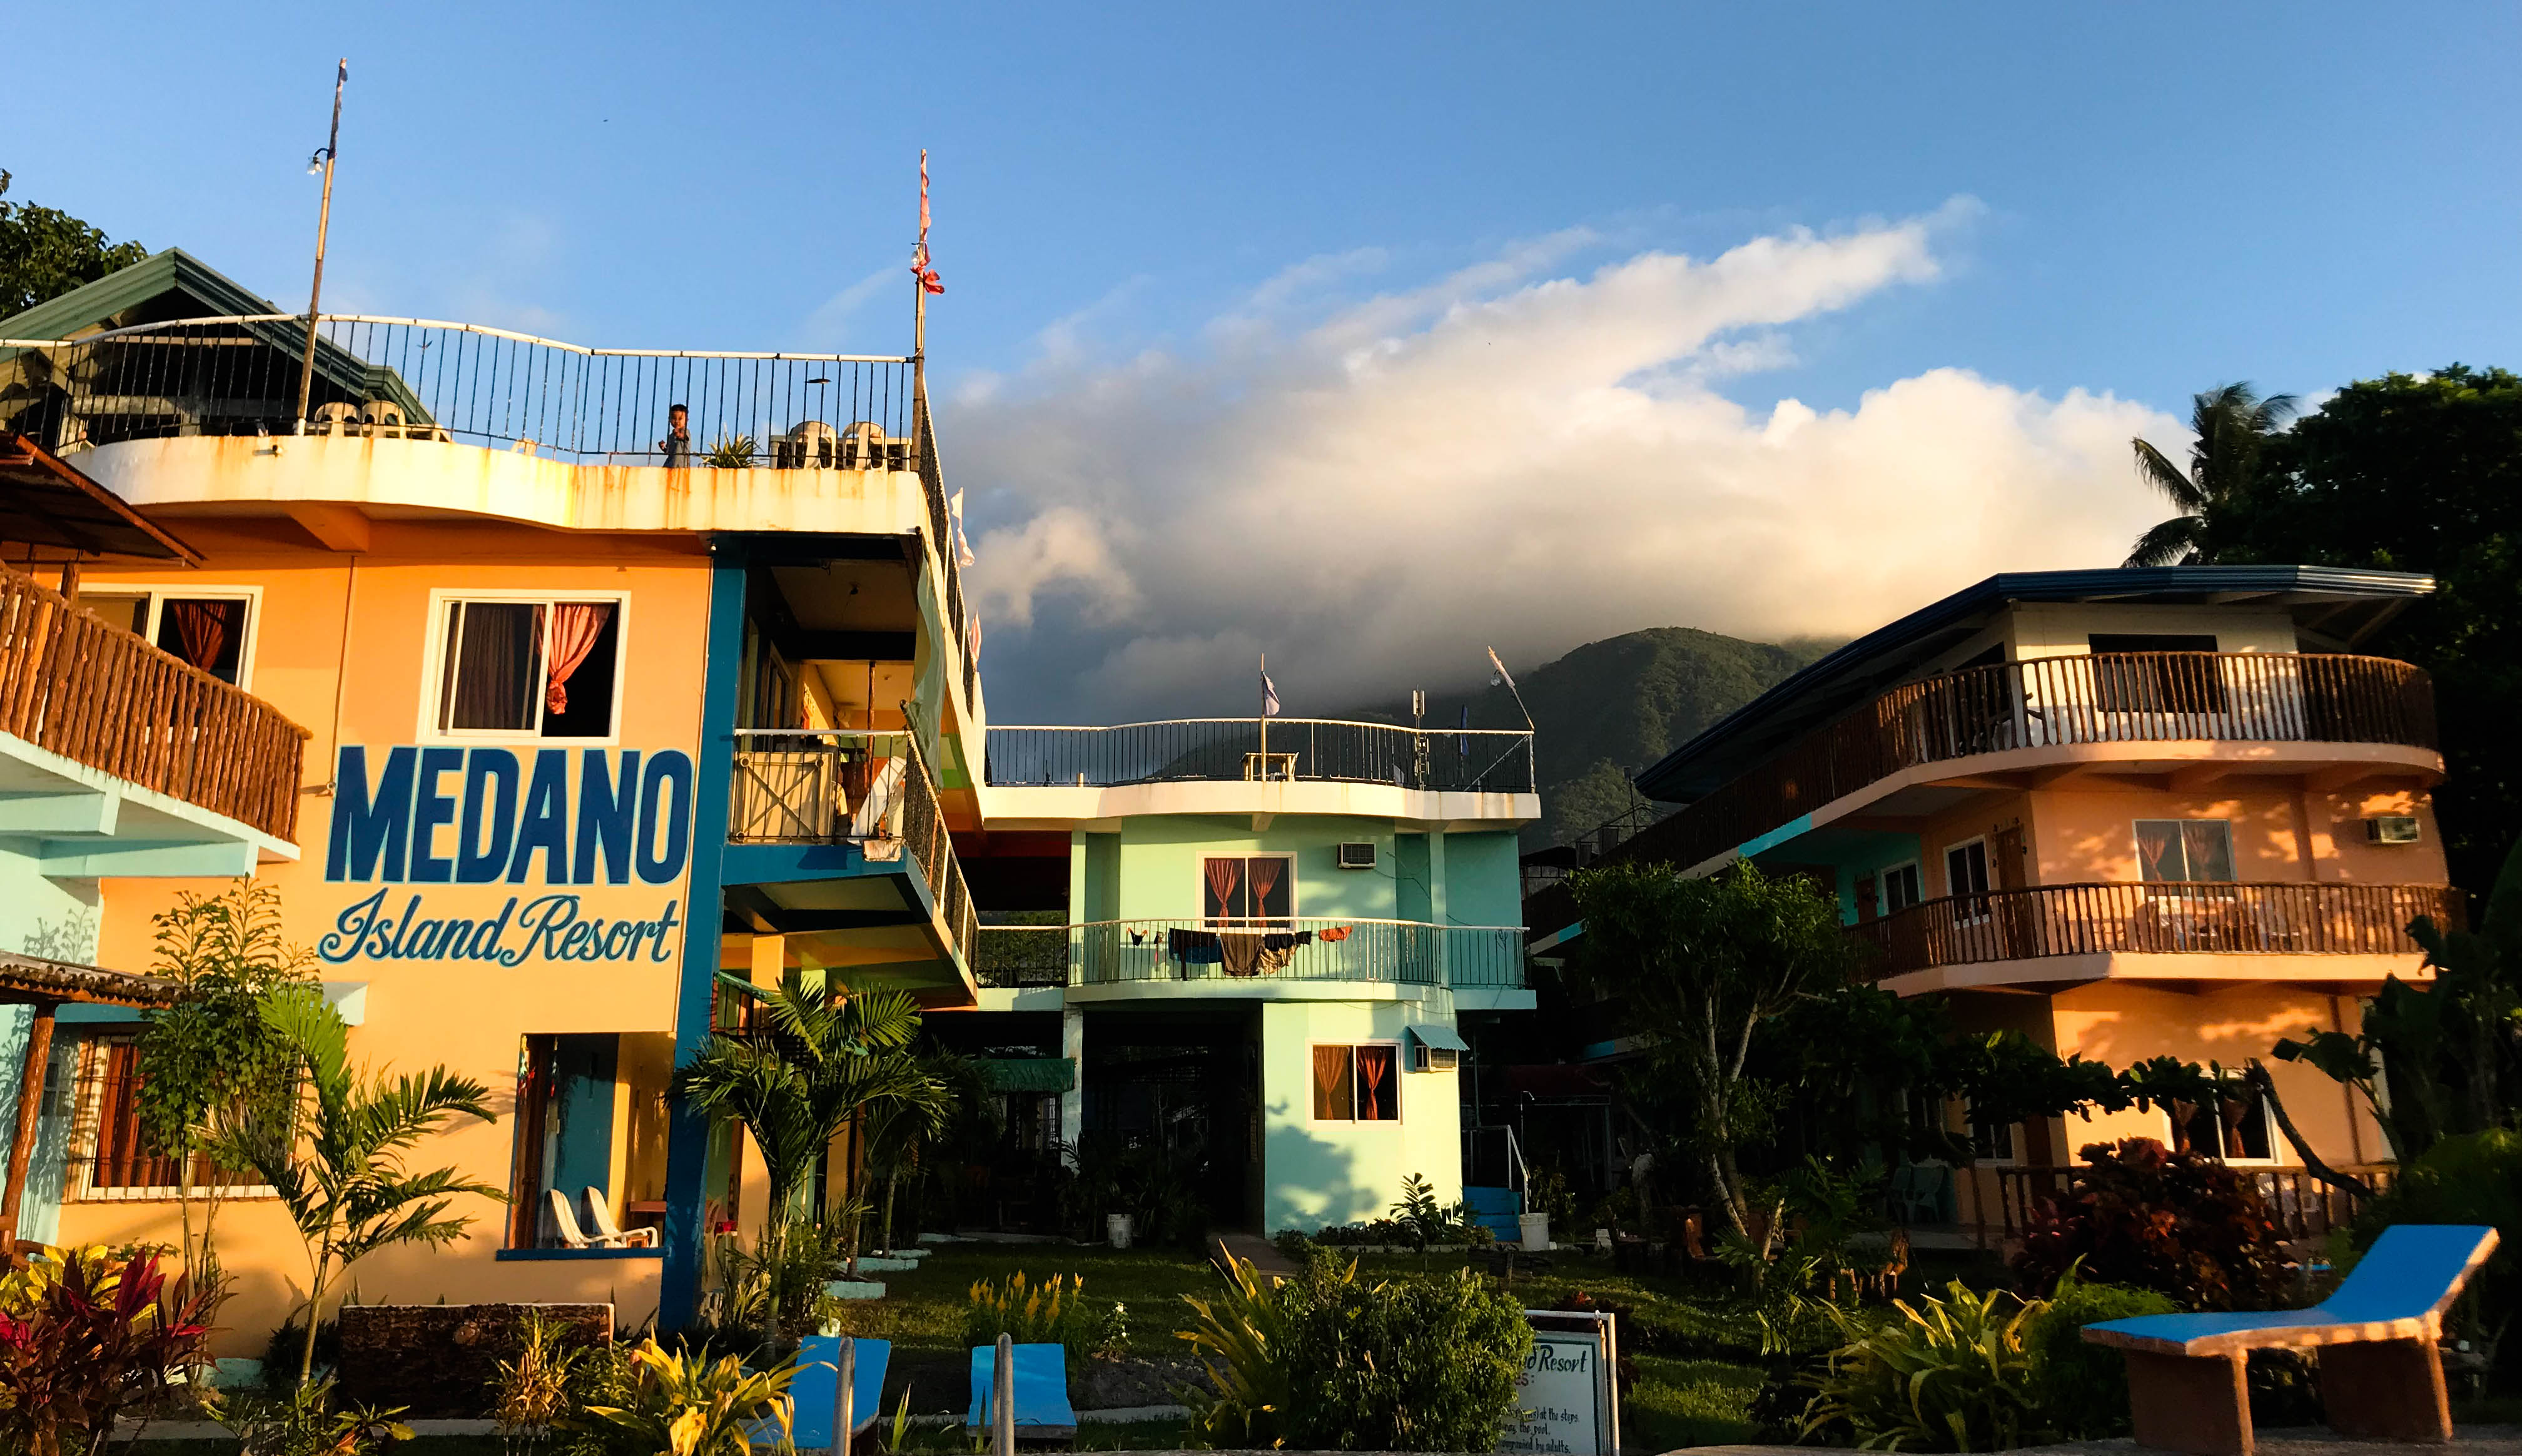 Medano Island Resort de Camiguin